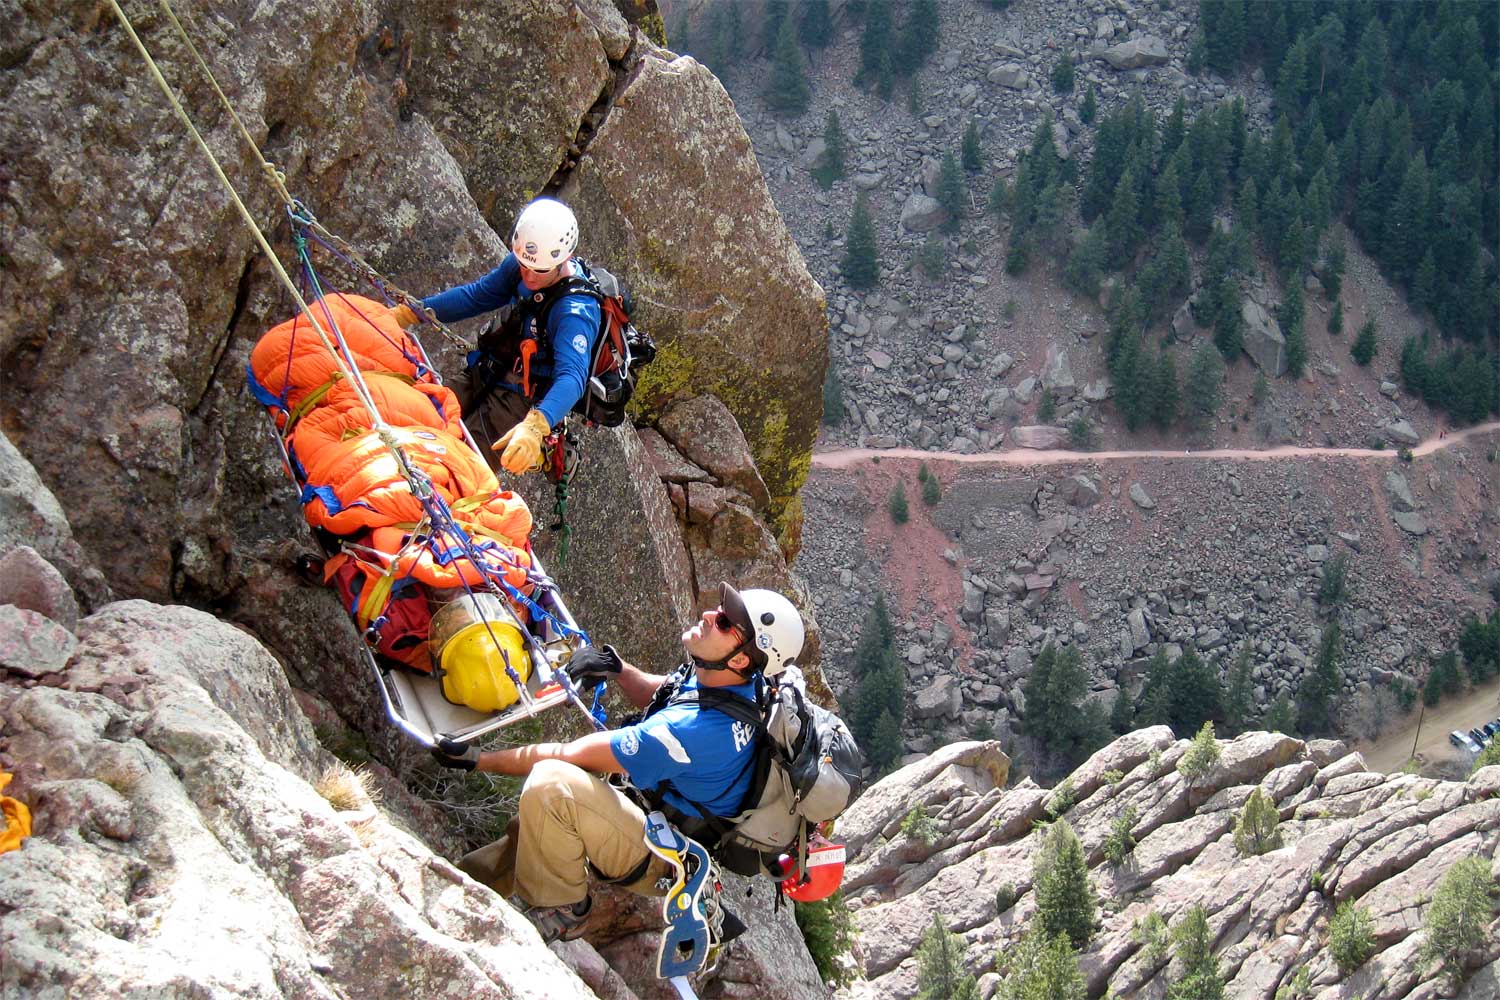 colorado, Rocky Mountain national park, rmnp, rescues